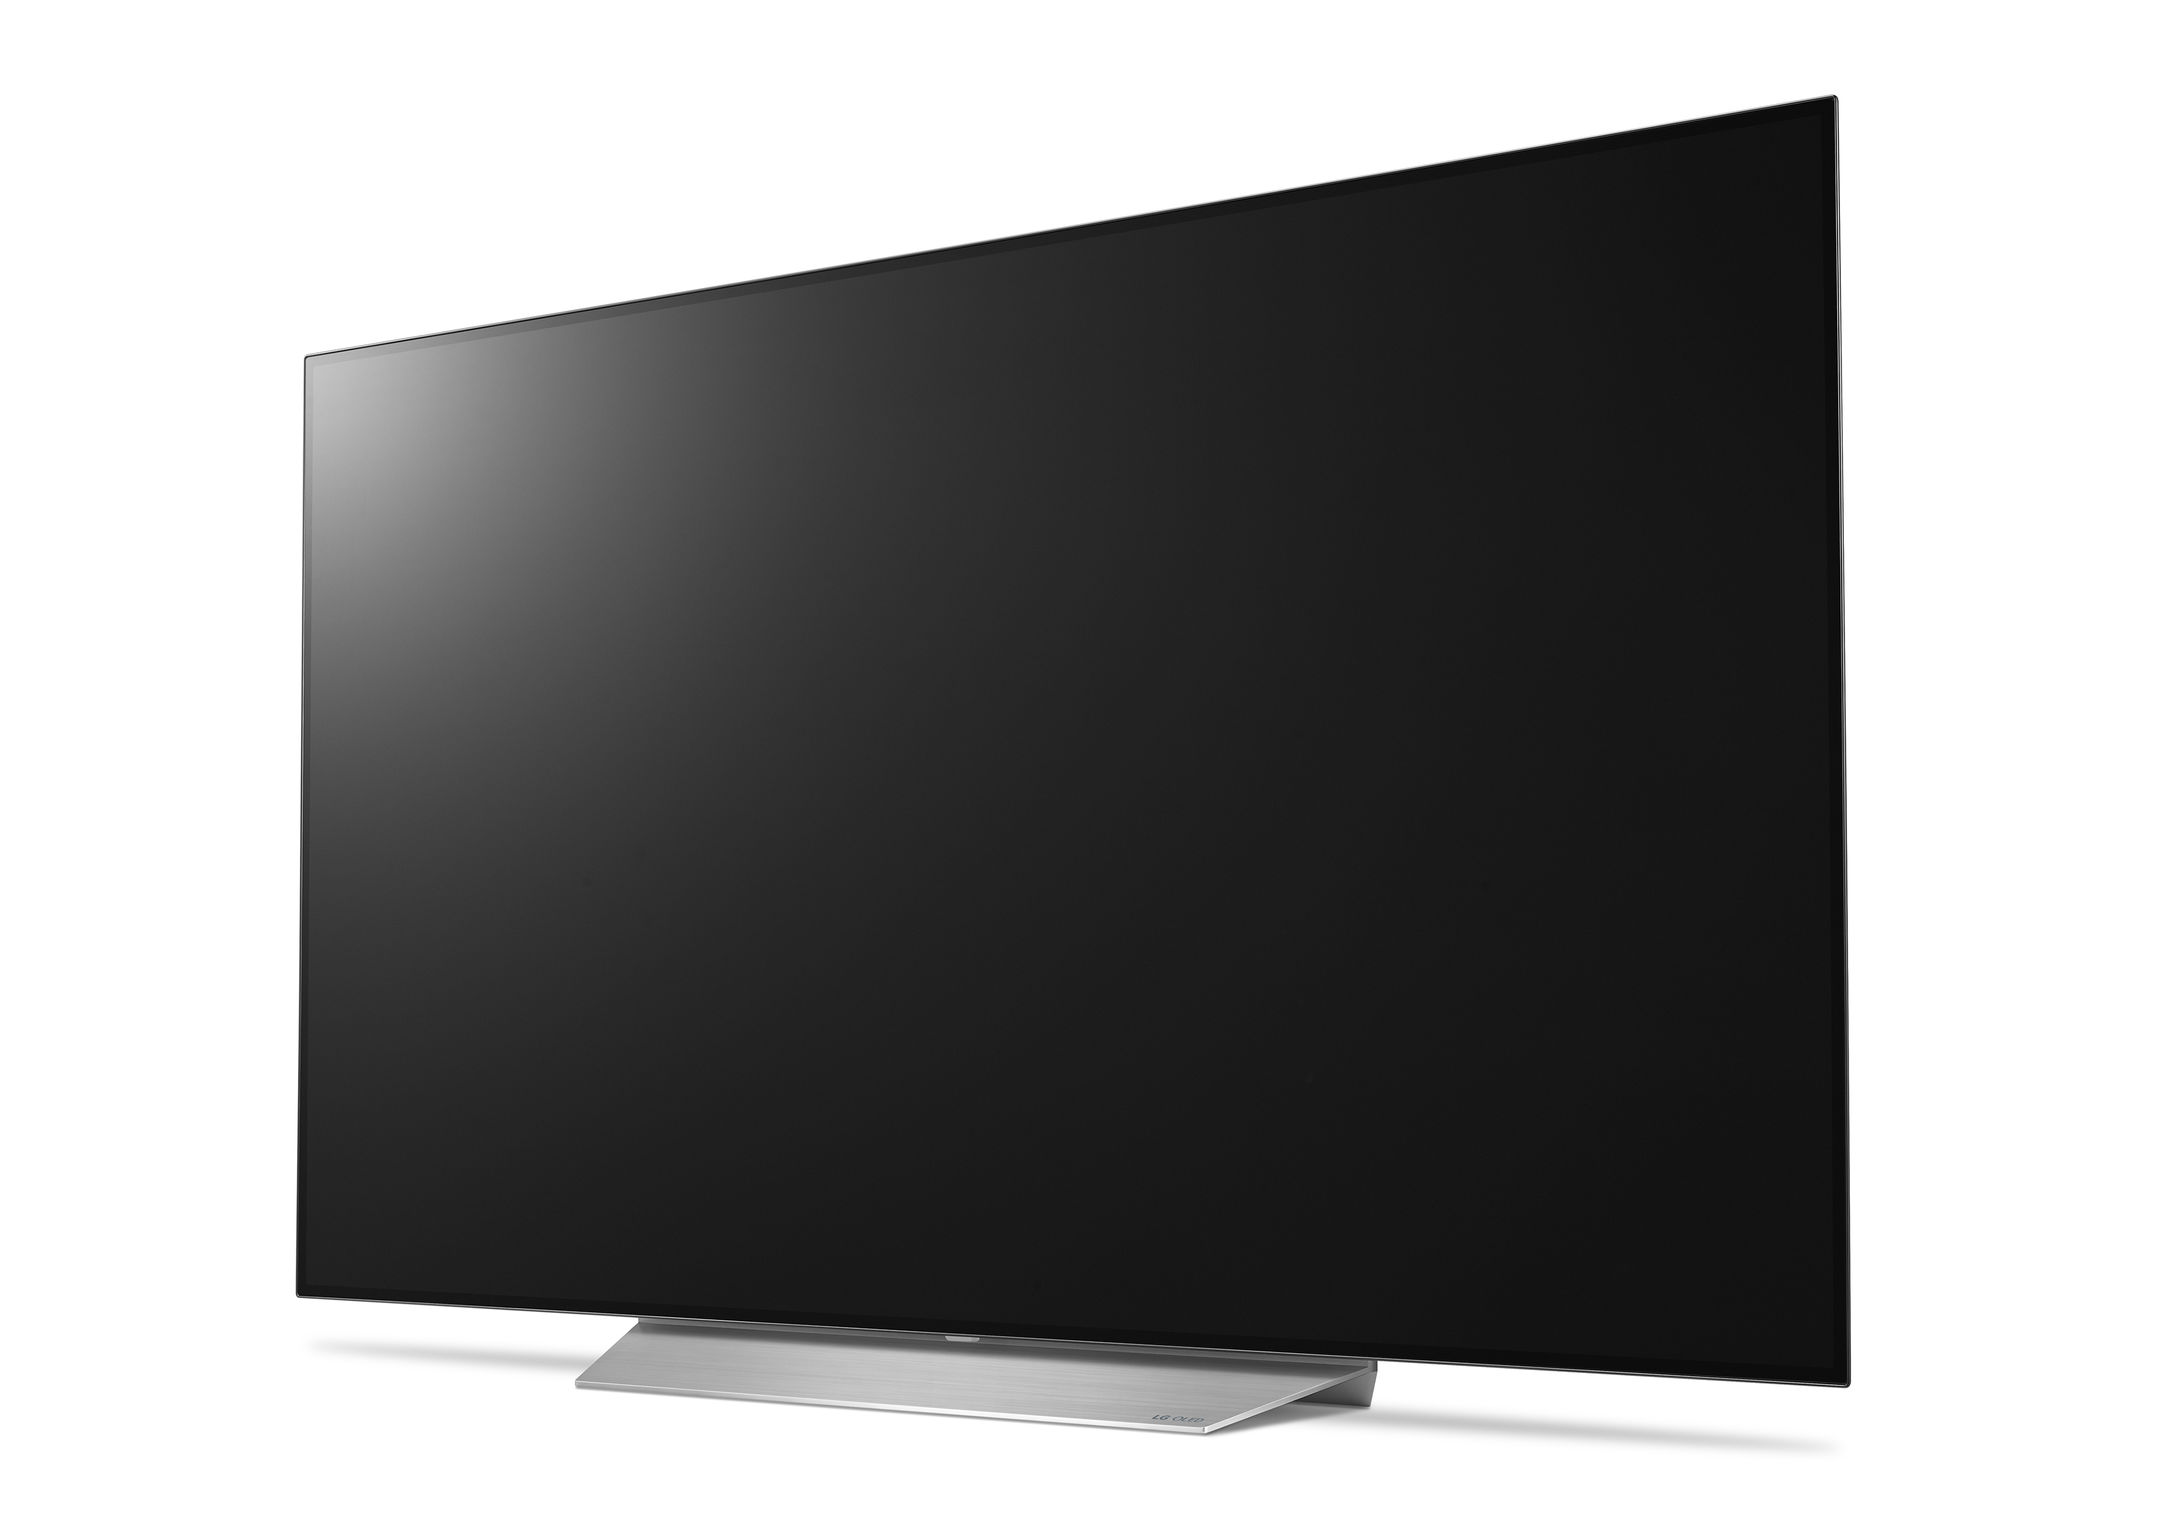 LG OLED TV (C7)